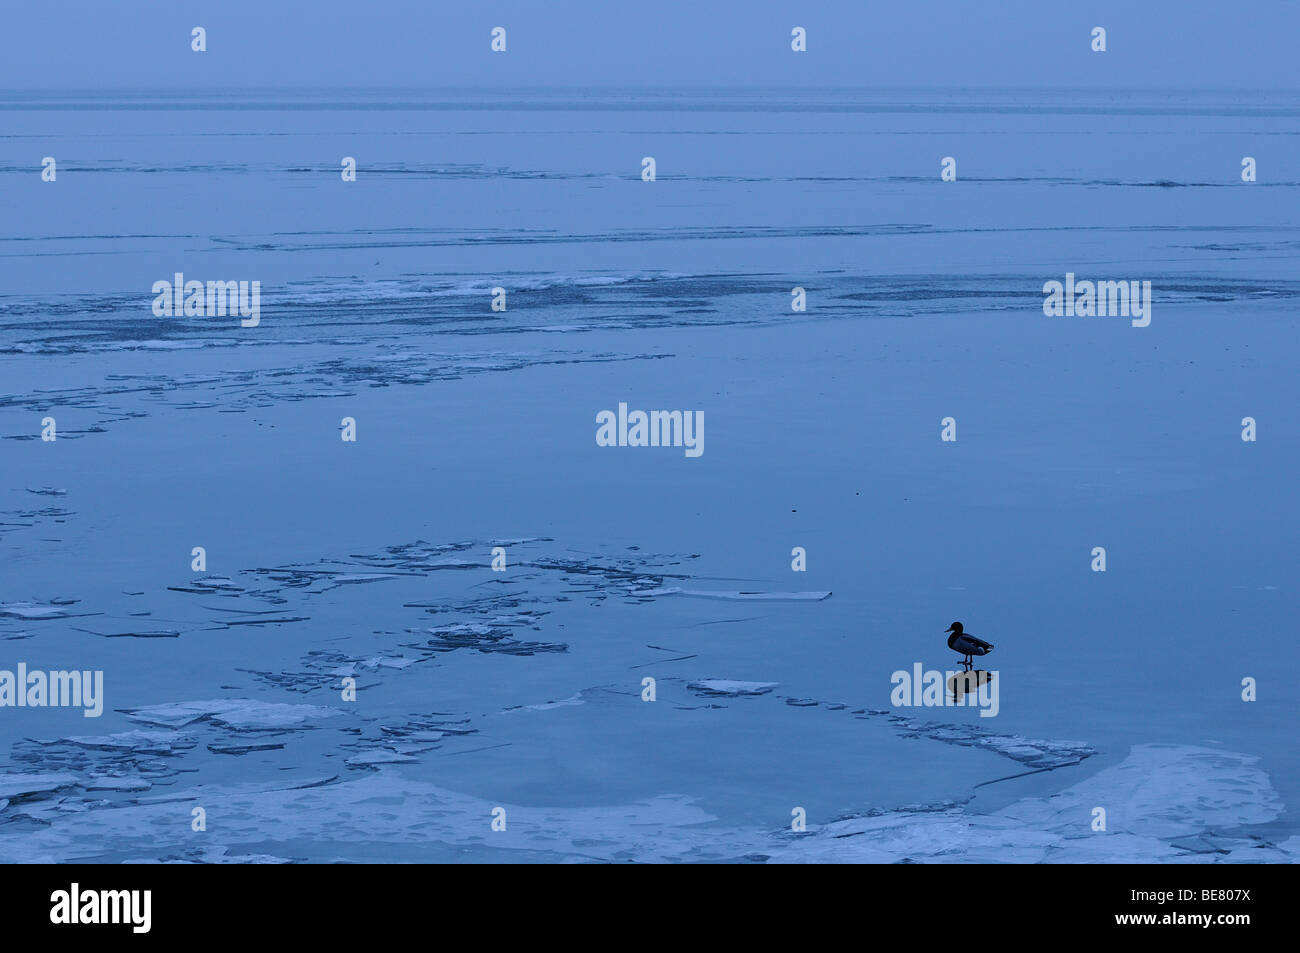 Solitaire wilde eend staand op ijsvlakte, solitaria mallard permanente sulla pianura di ghiaccio Foto Stock